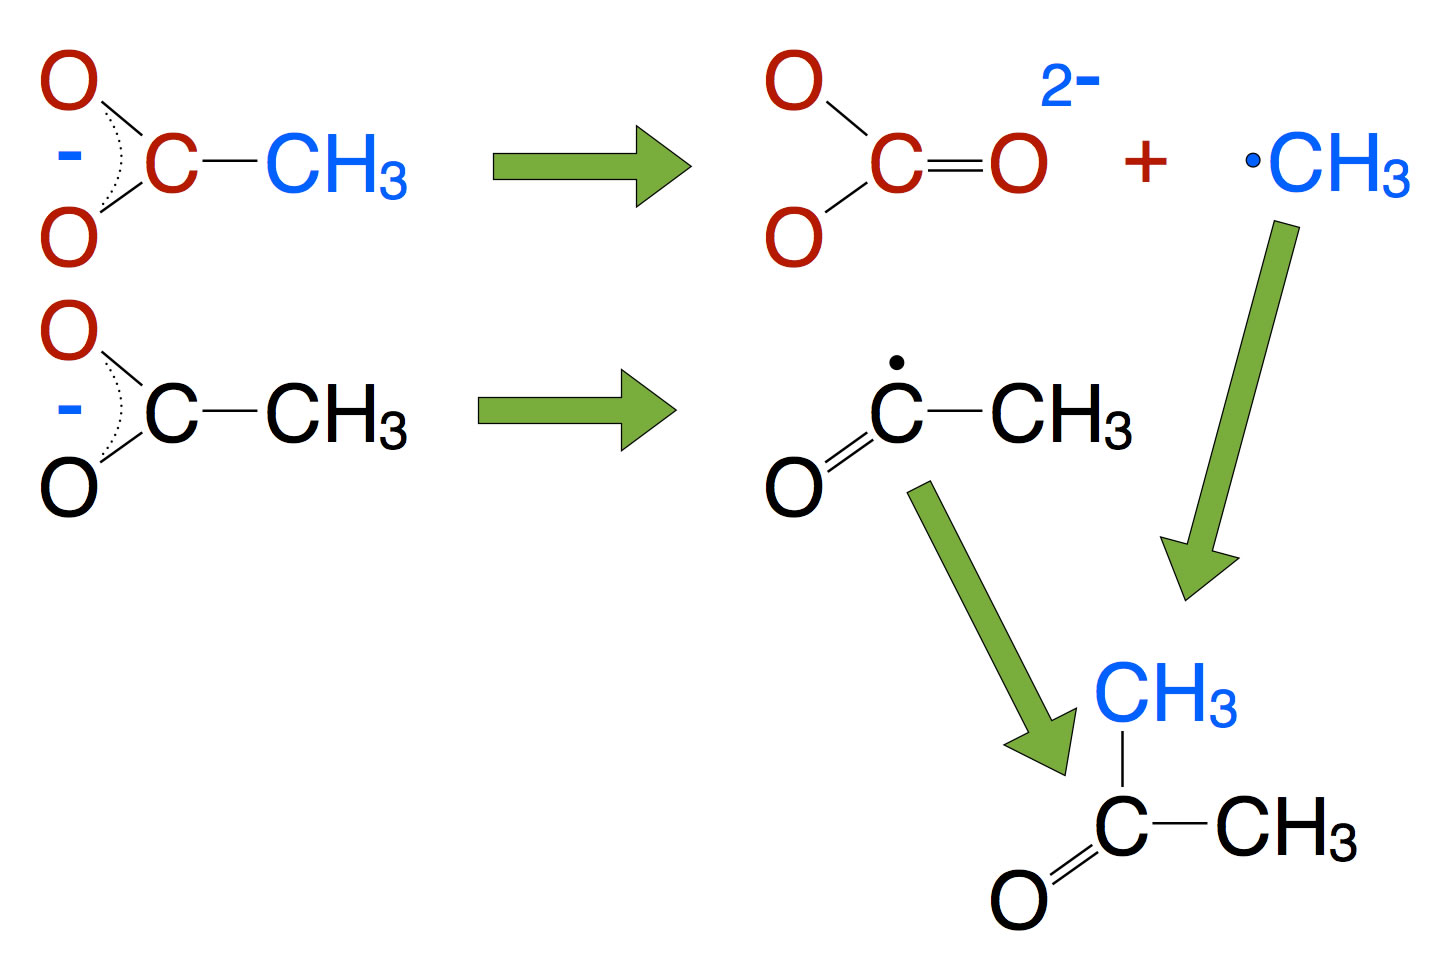 Reaktionsschema der Synthese von Aceton aus Acetat